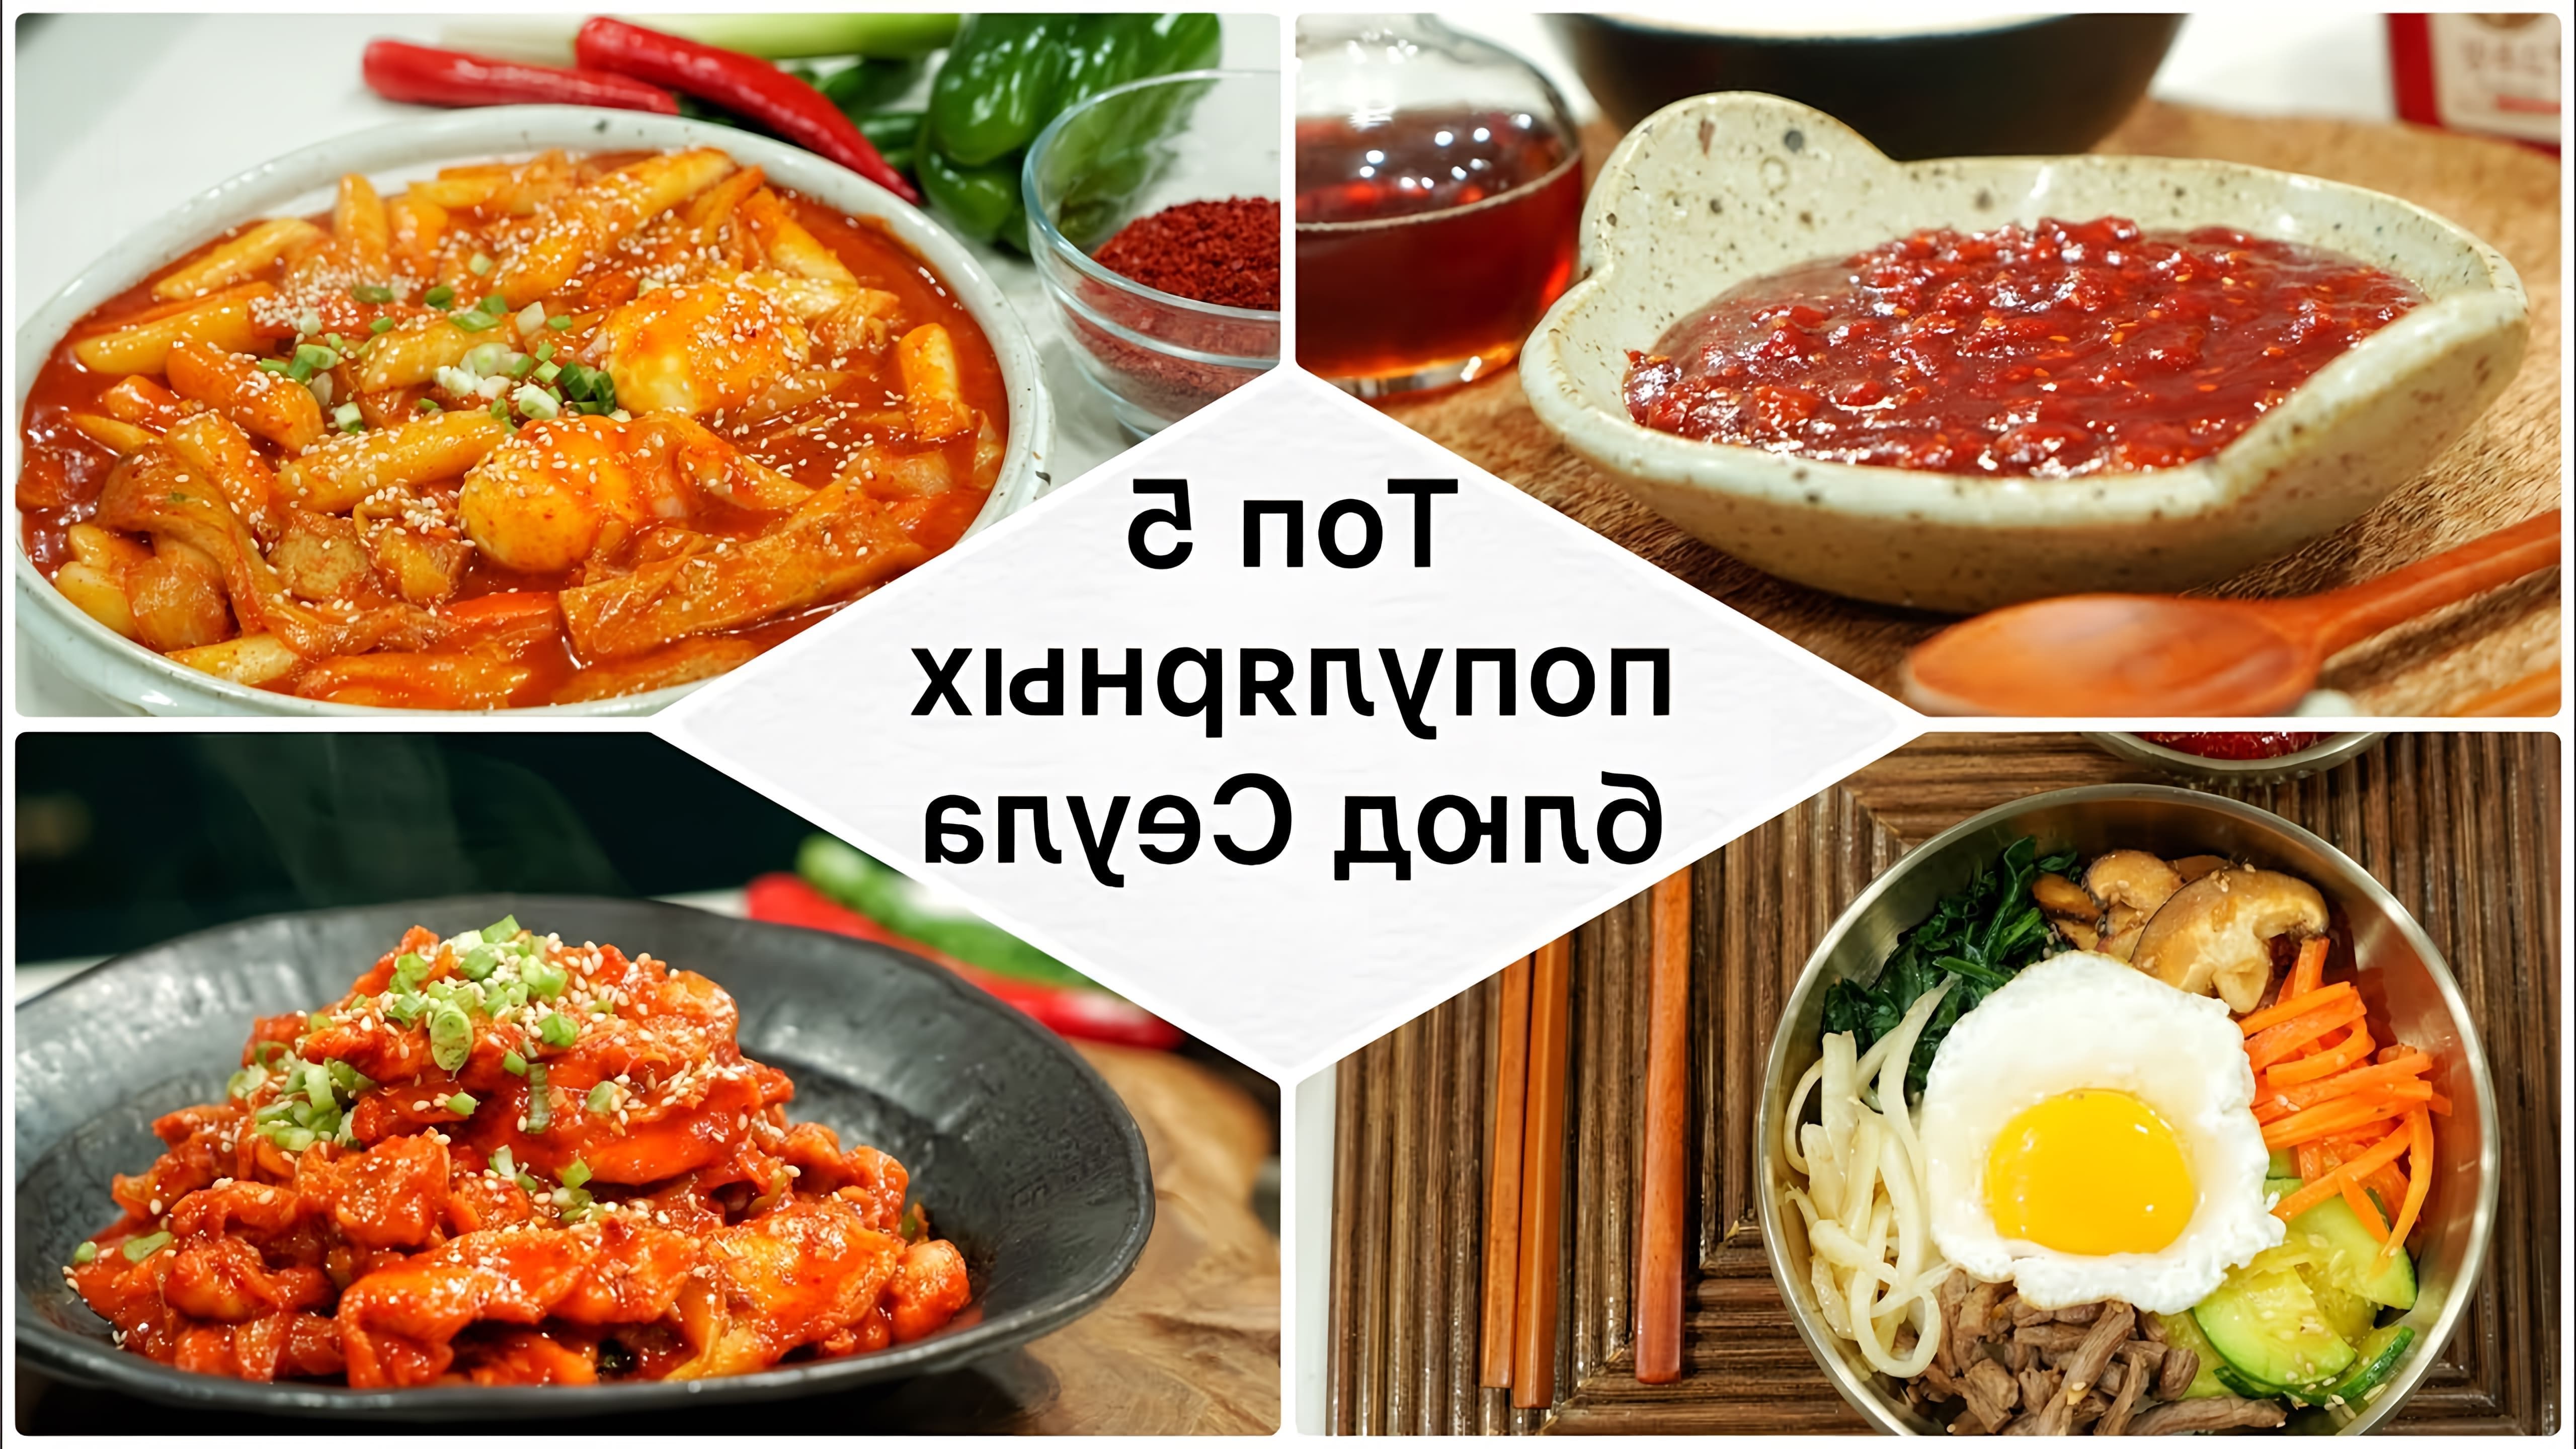 В этом видео шеф-повар показывает, как приготовить 5 популярных корейских блюд: тапочки, пибимпаб, суп с куте, жаркое из говядины с куте и пульгоги